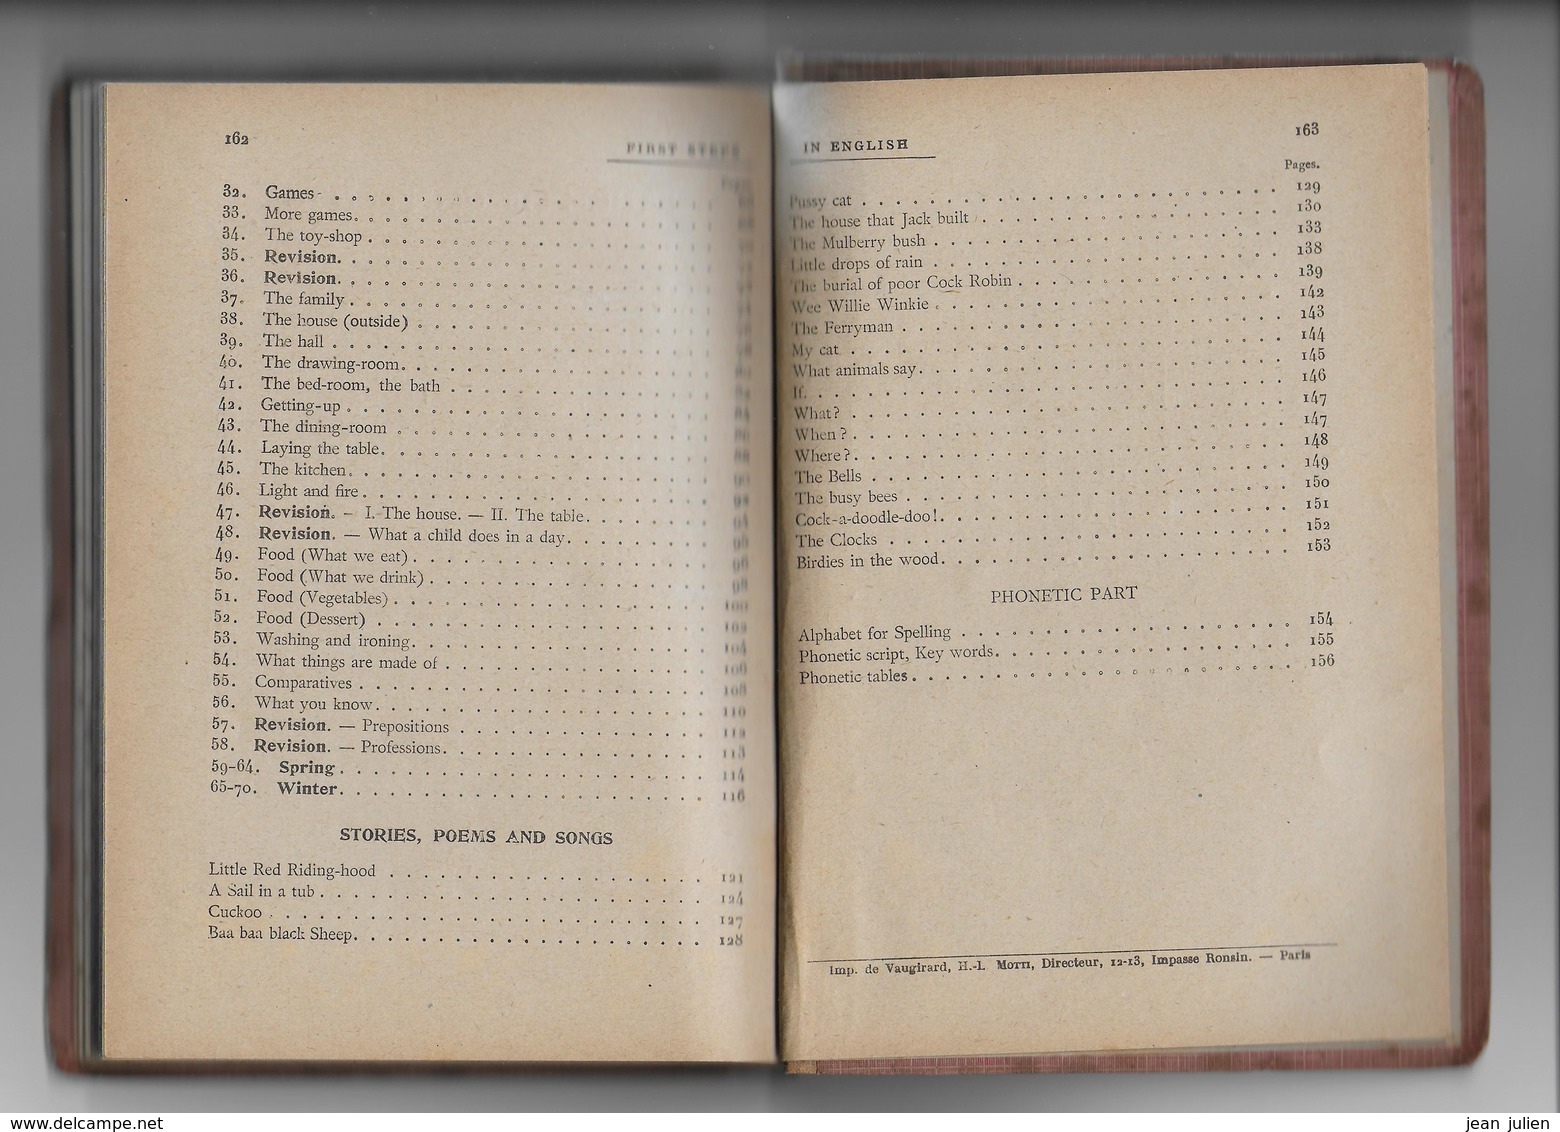 FIRST STEPS IN ENGLISH - Editeur : H.DIDIER - 1919 - Trés rare - Apprendre la langue anglaise - 6 scans